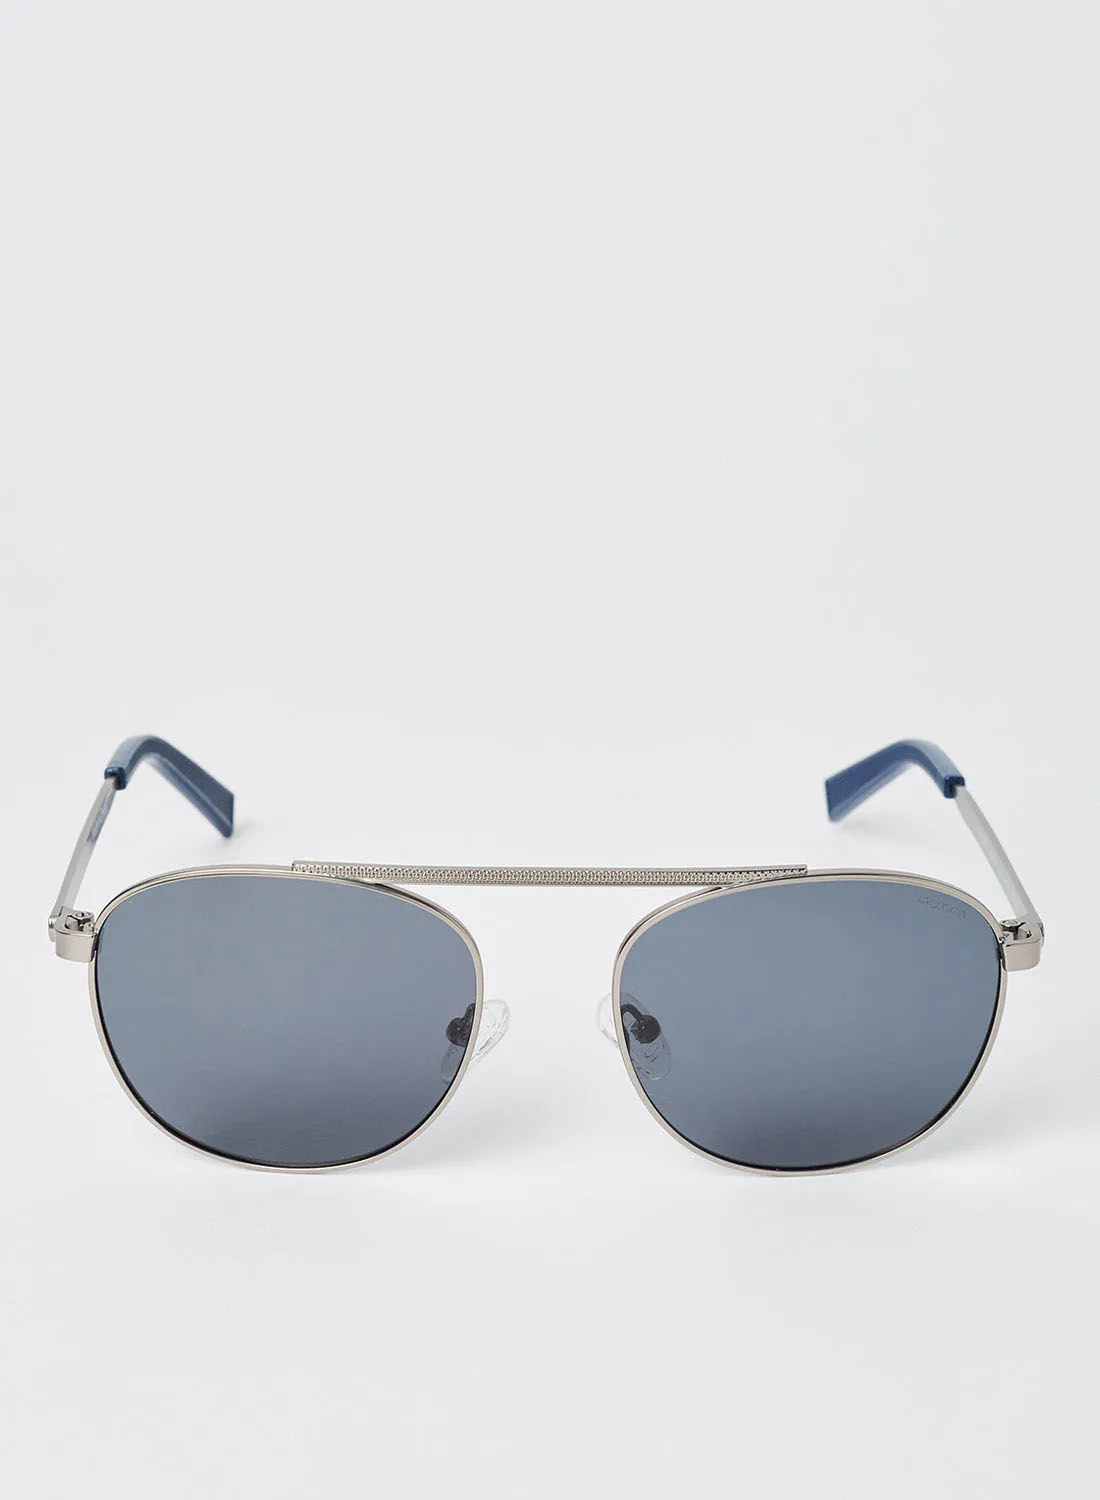 نظارات شمسية مستطيلة محقونة كاملة الحواف للرجال من لاكوست - مقاس العدسة: 54 مم